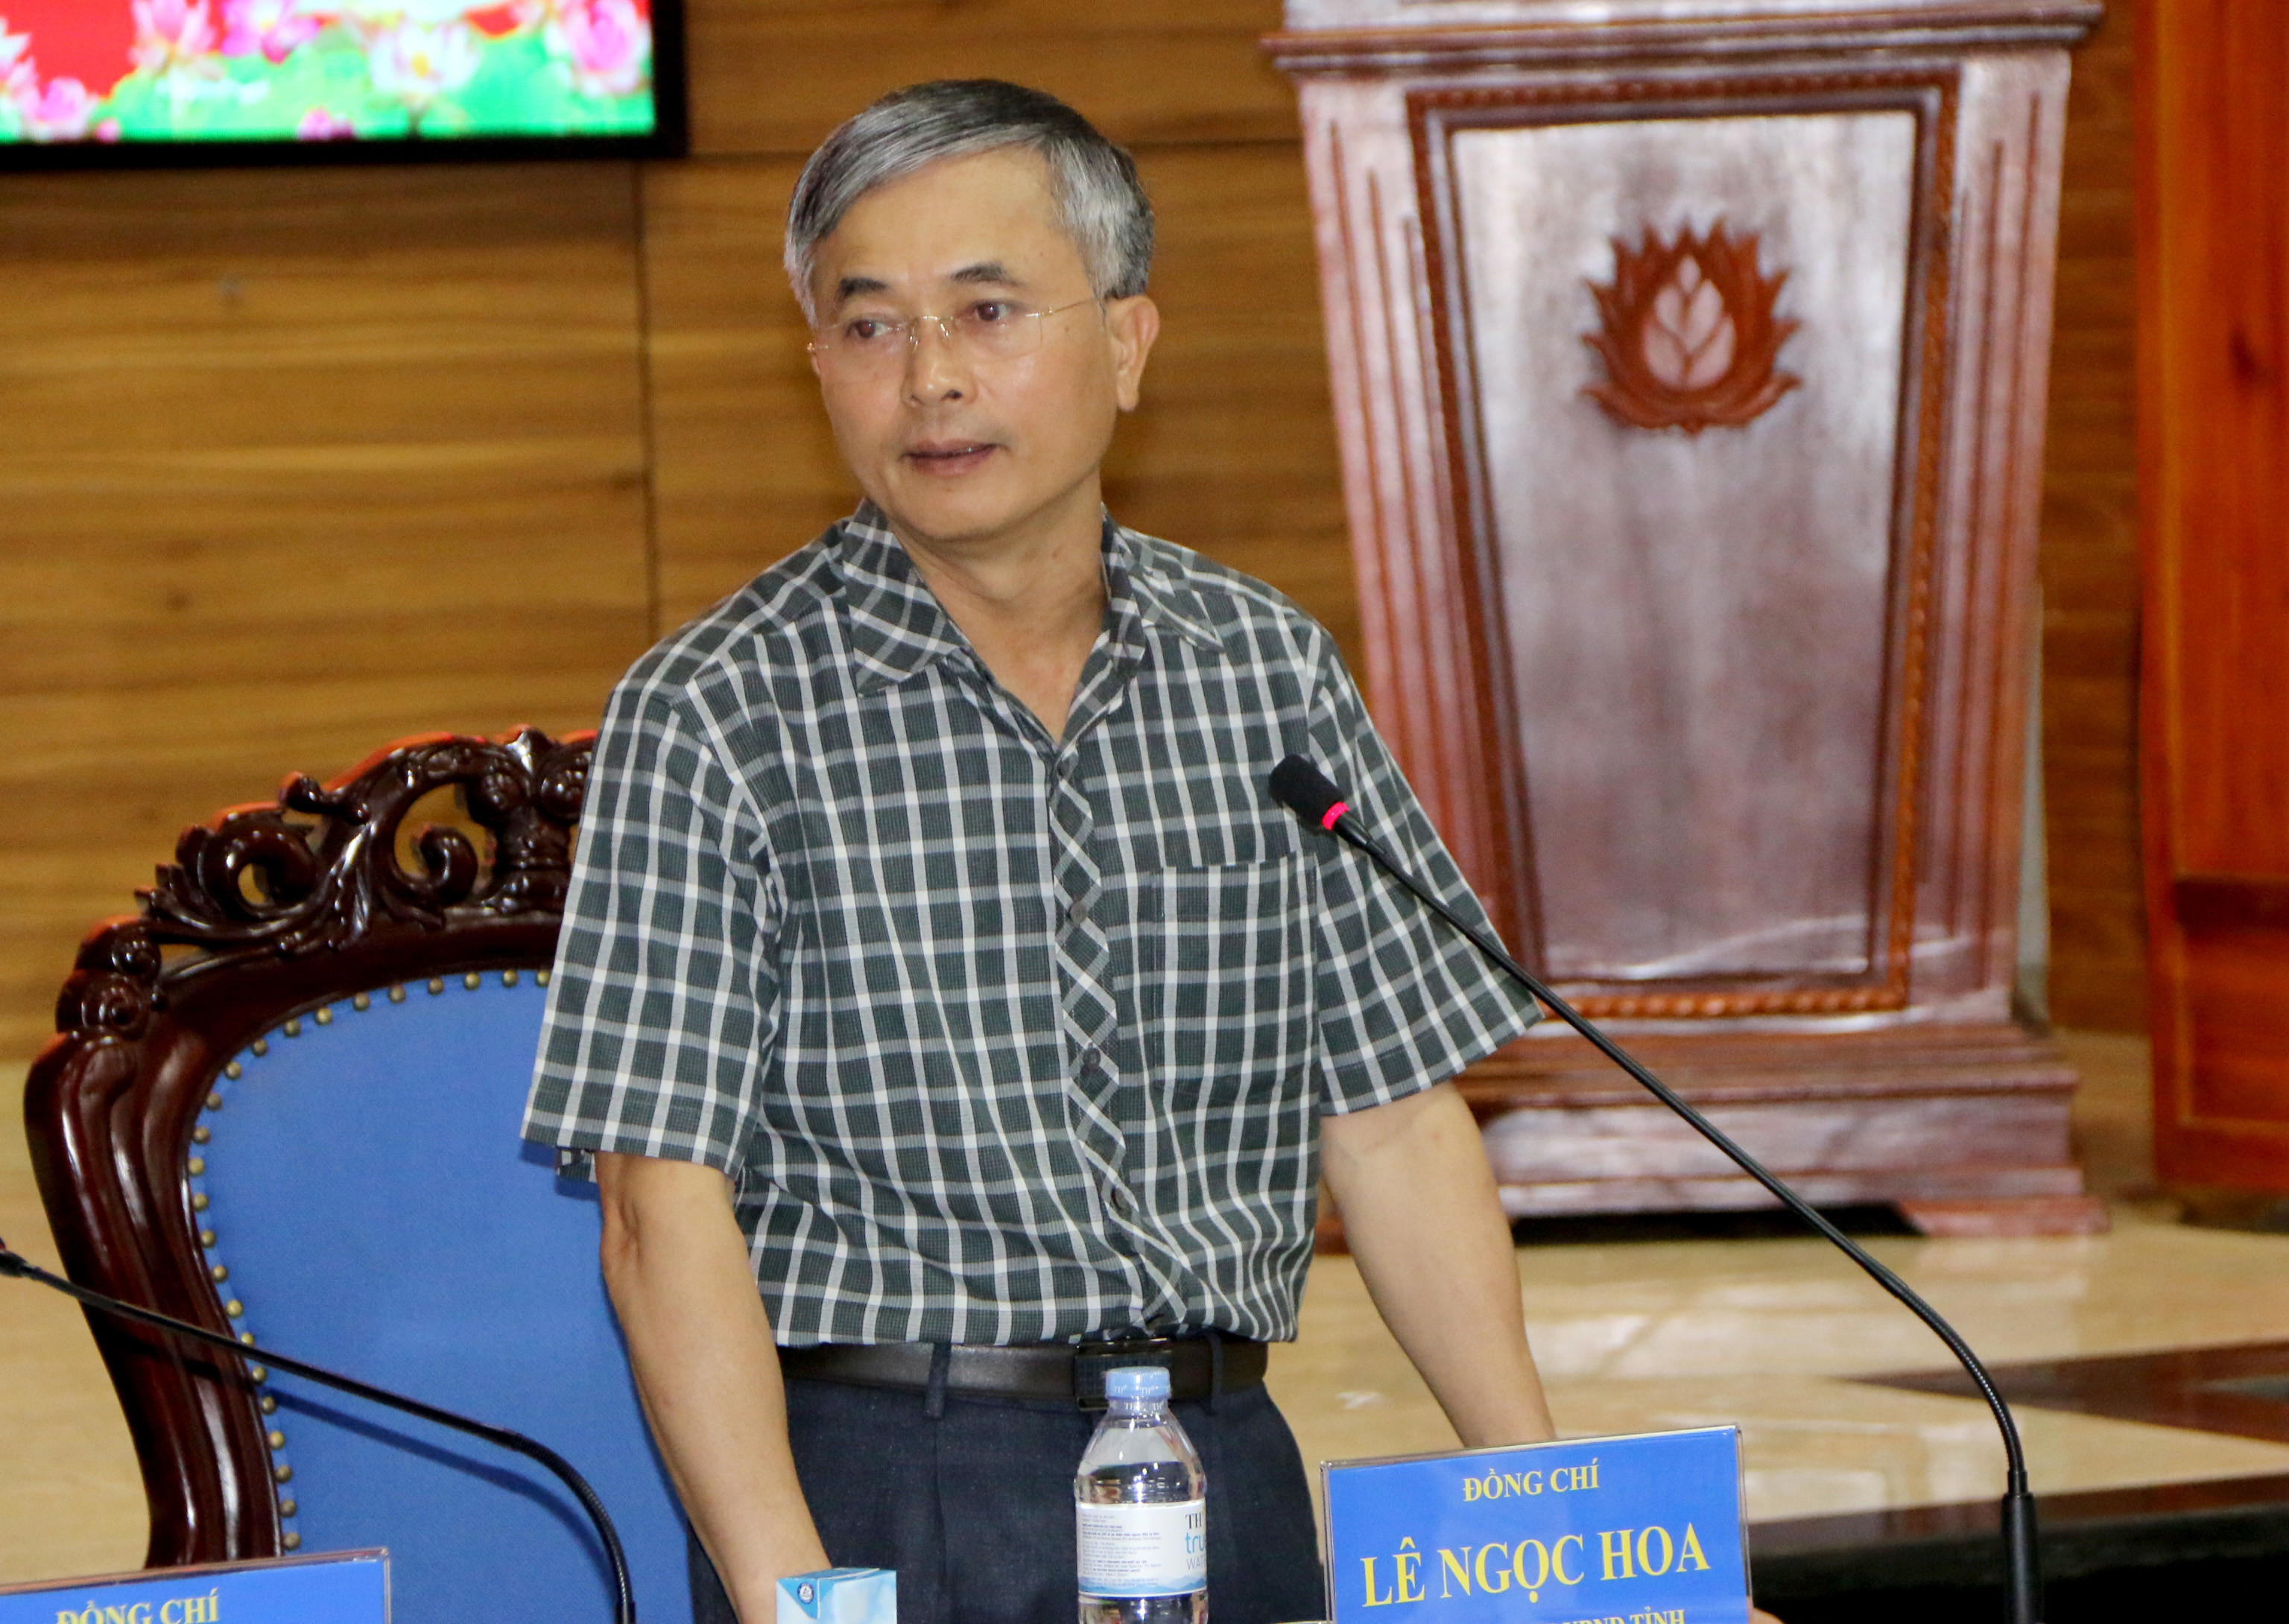 Đồng chí Lê Ngọc Hoa - Phó Chủ tịch UBND tỉnh Nghệ An phát biểu tại buổi làm việc. Ảnh: Tiến Đông 